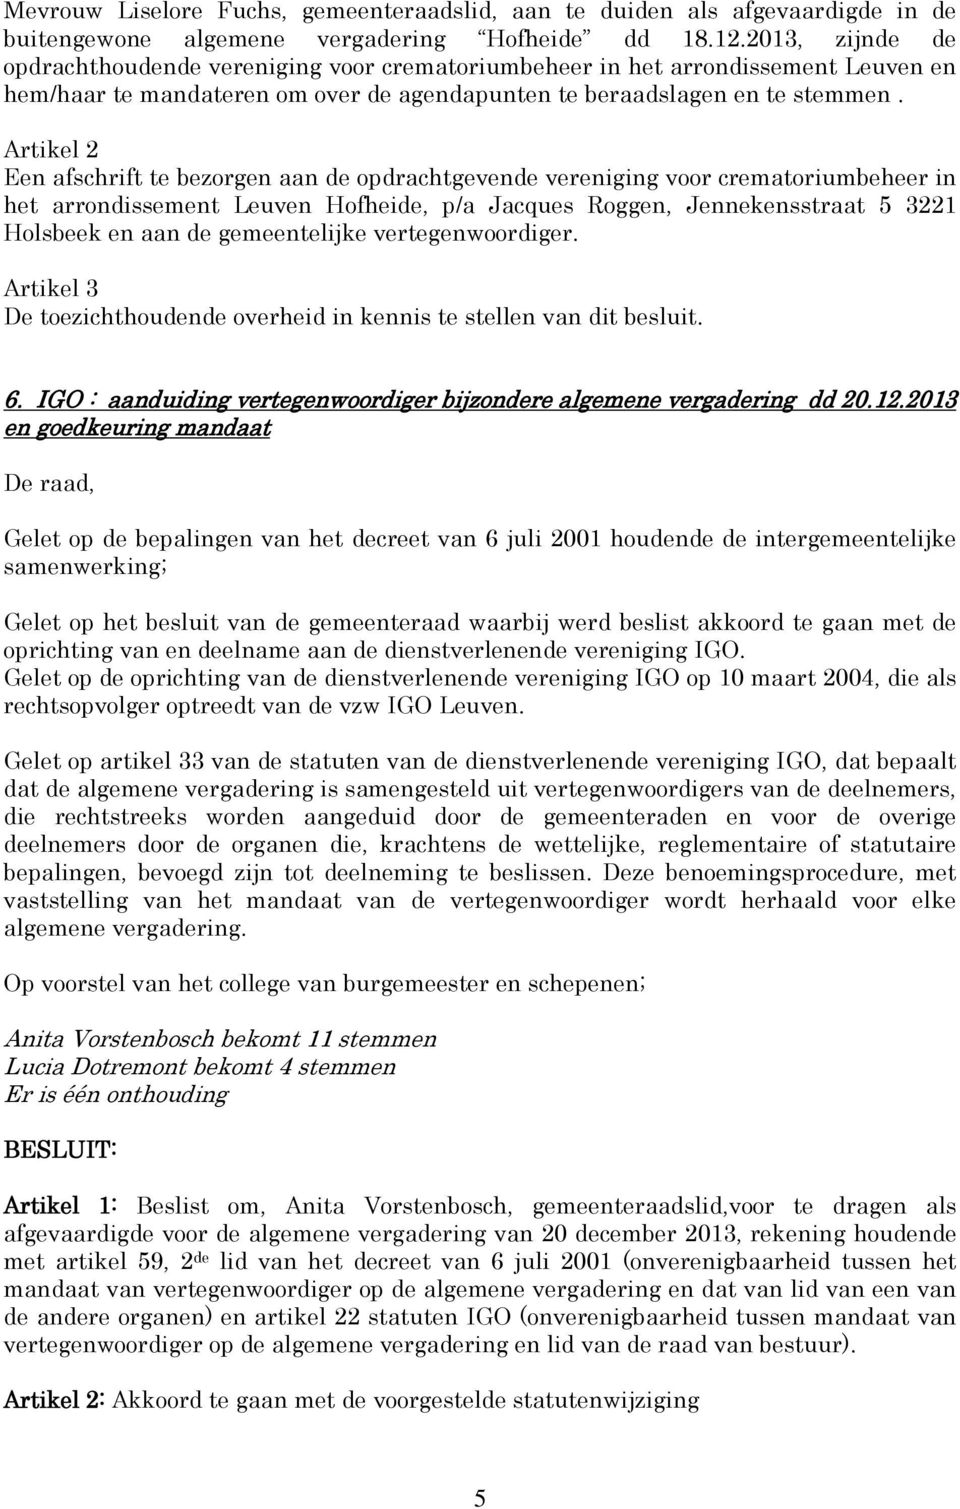 Artikel 2 Een afschrift te bezorgen aan de opdrachtgevende vereniging voor crematoriumbeheer in het arrondissement Leuven Hofheide, p/a Jacques Roggen, Jennekensstraat 5 3221 Holsbeek en aan de